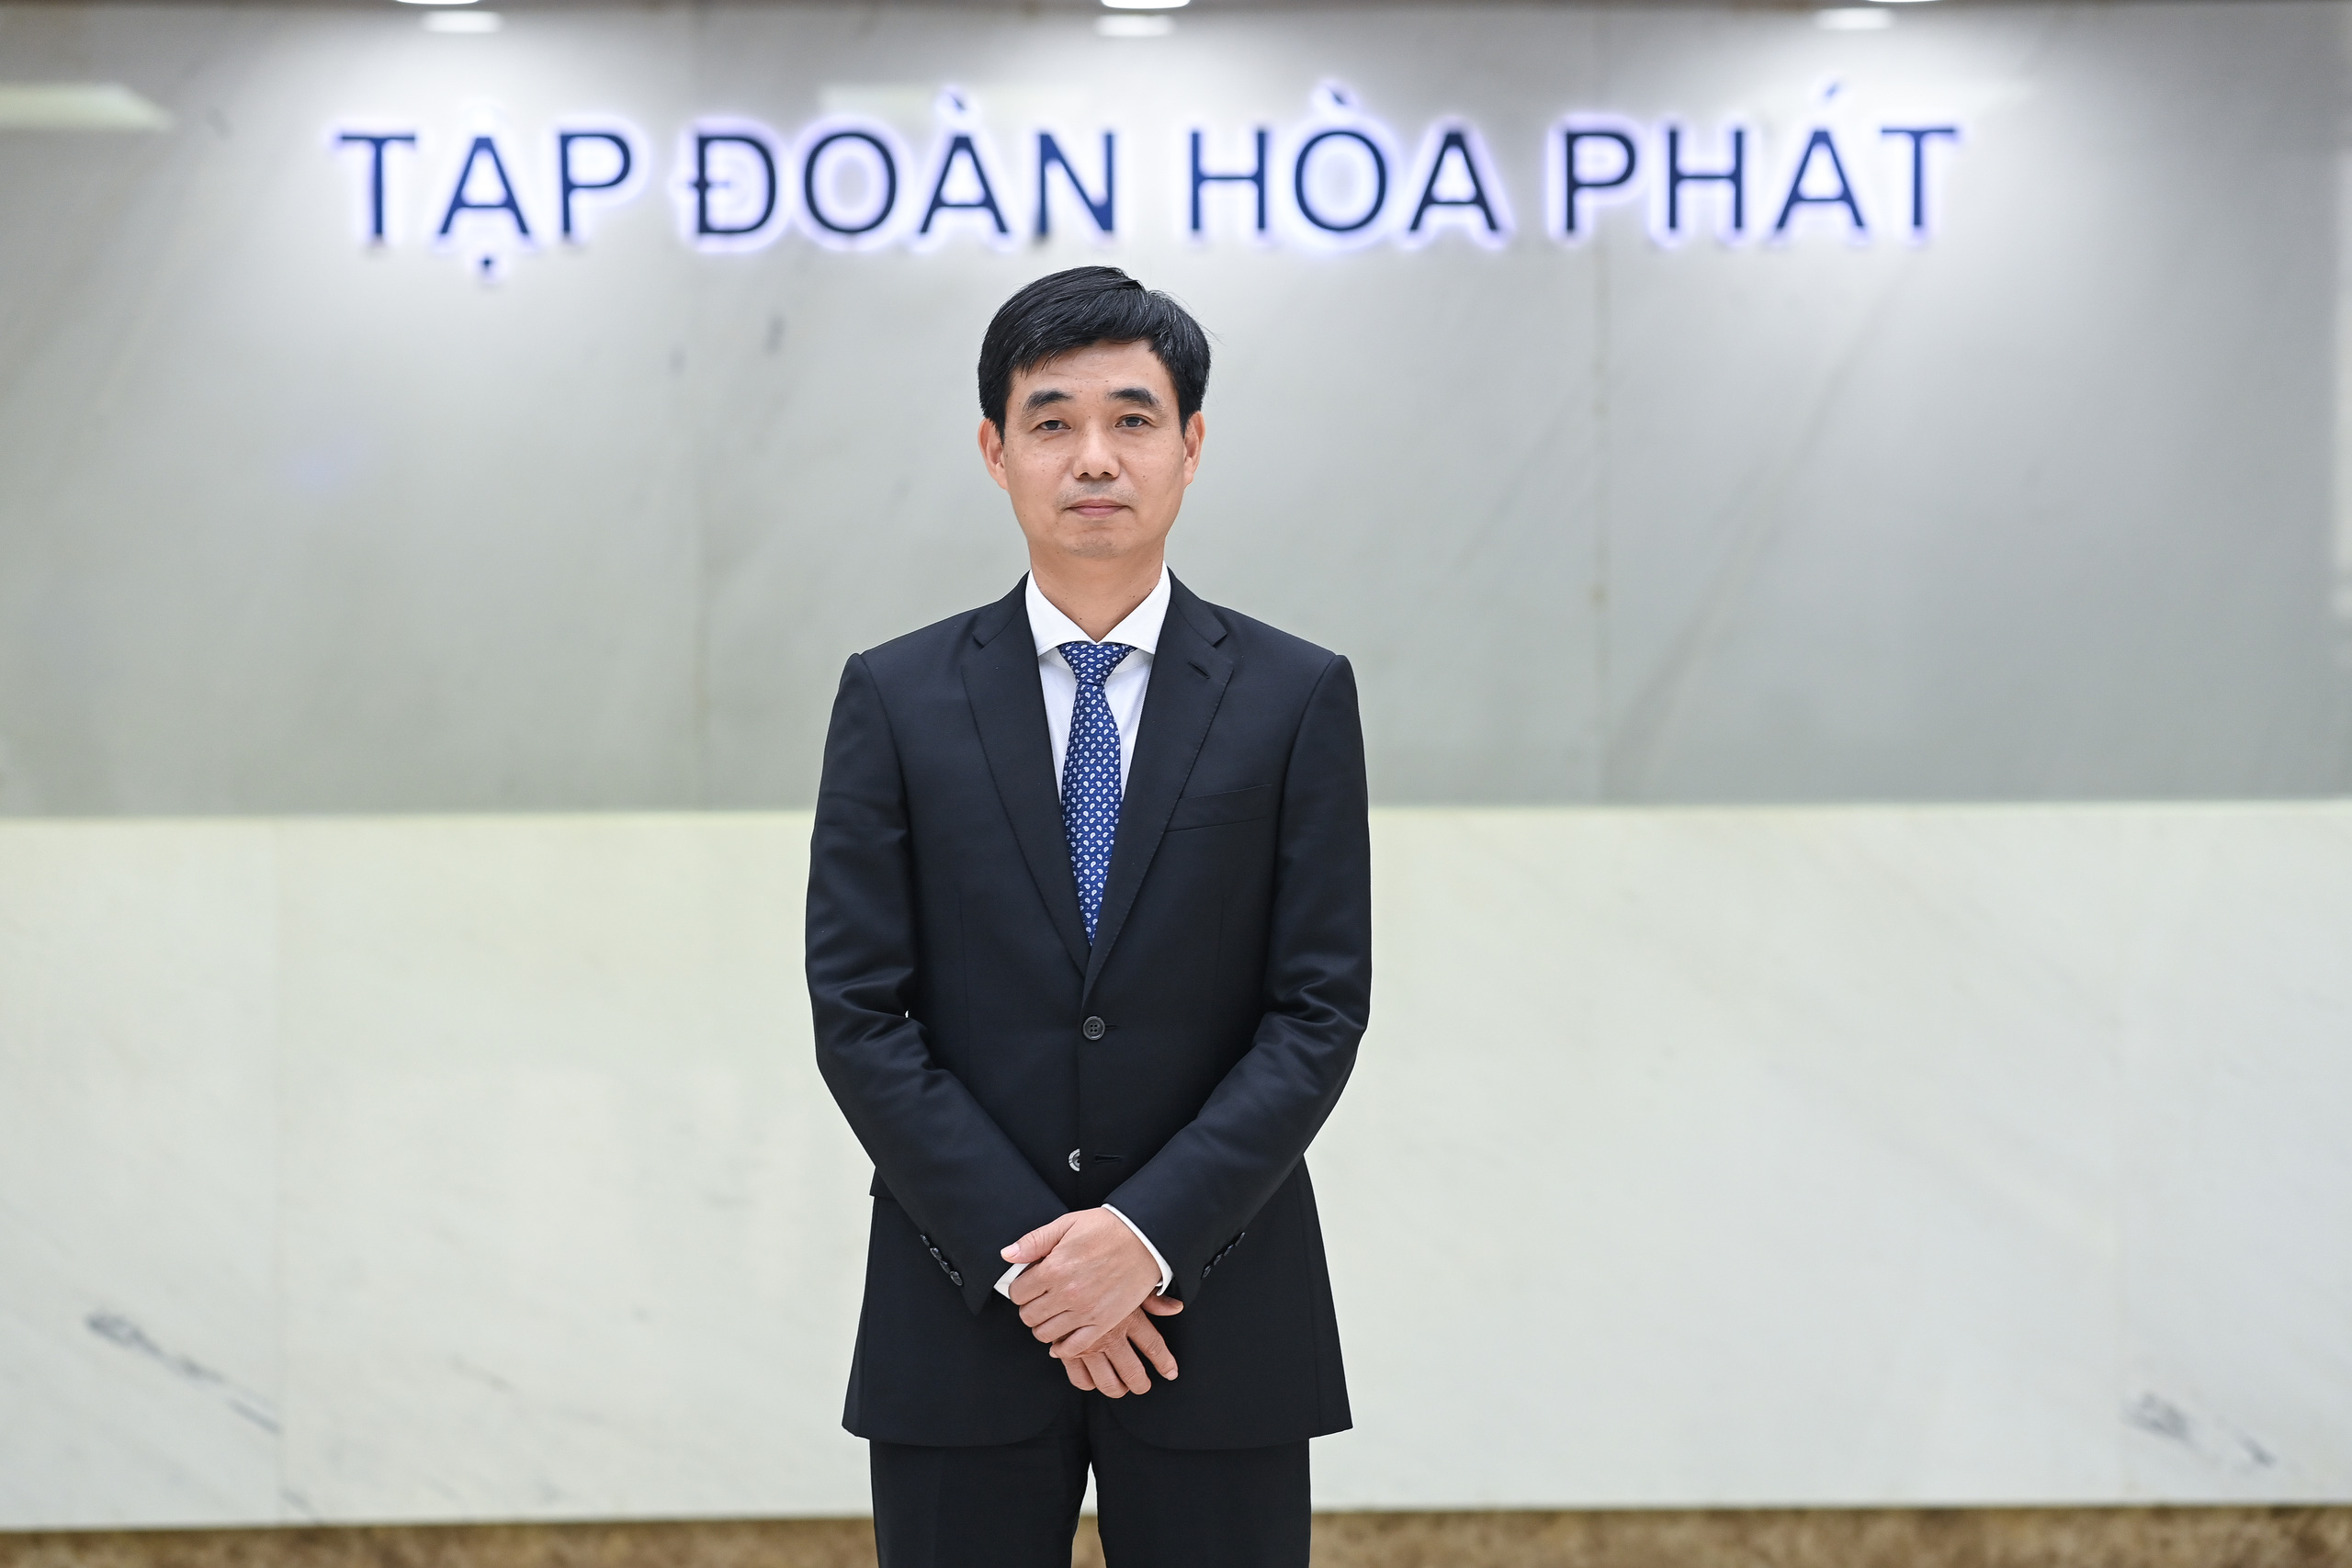 Ông Nguyễn Việt Thắng thay ông Trần Tuấn Dương làm Tổng giám đốc Hoà Phát: Thời điểm F2 chín muồi - Ảnh 1.